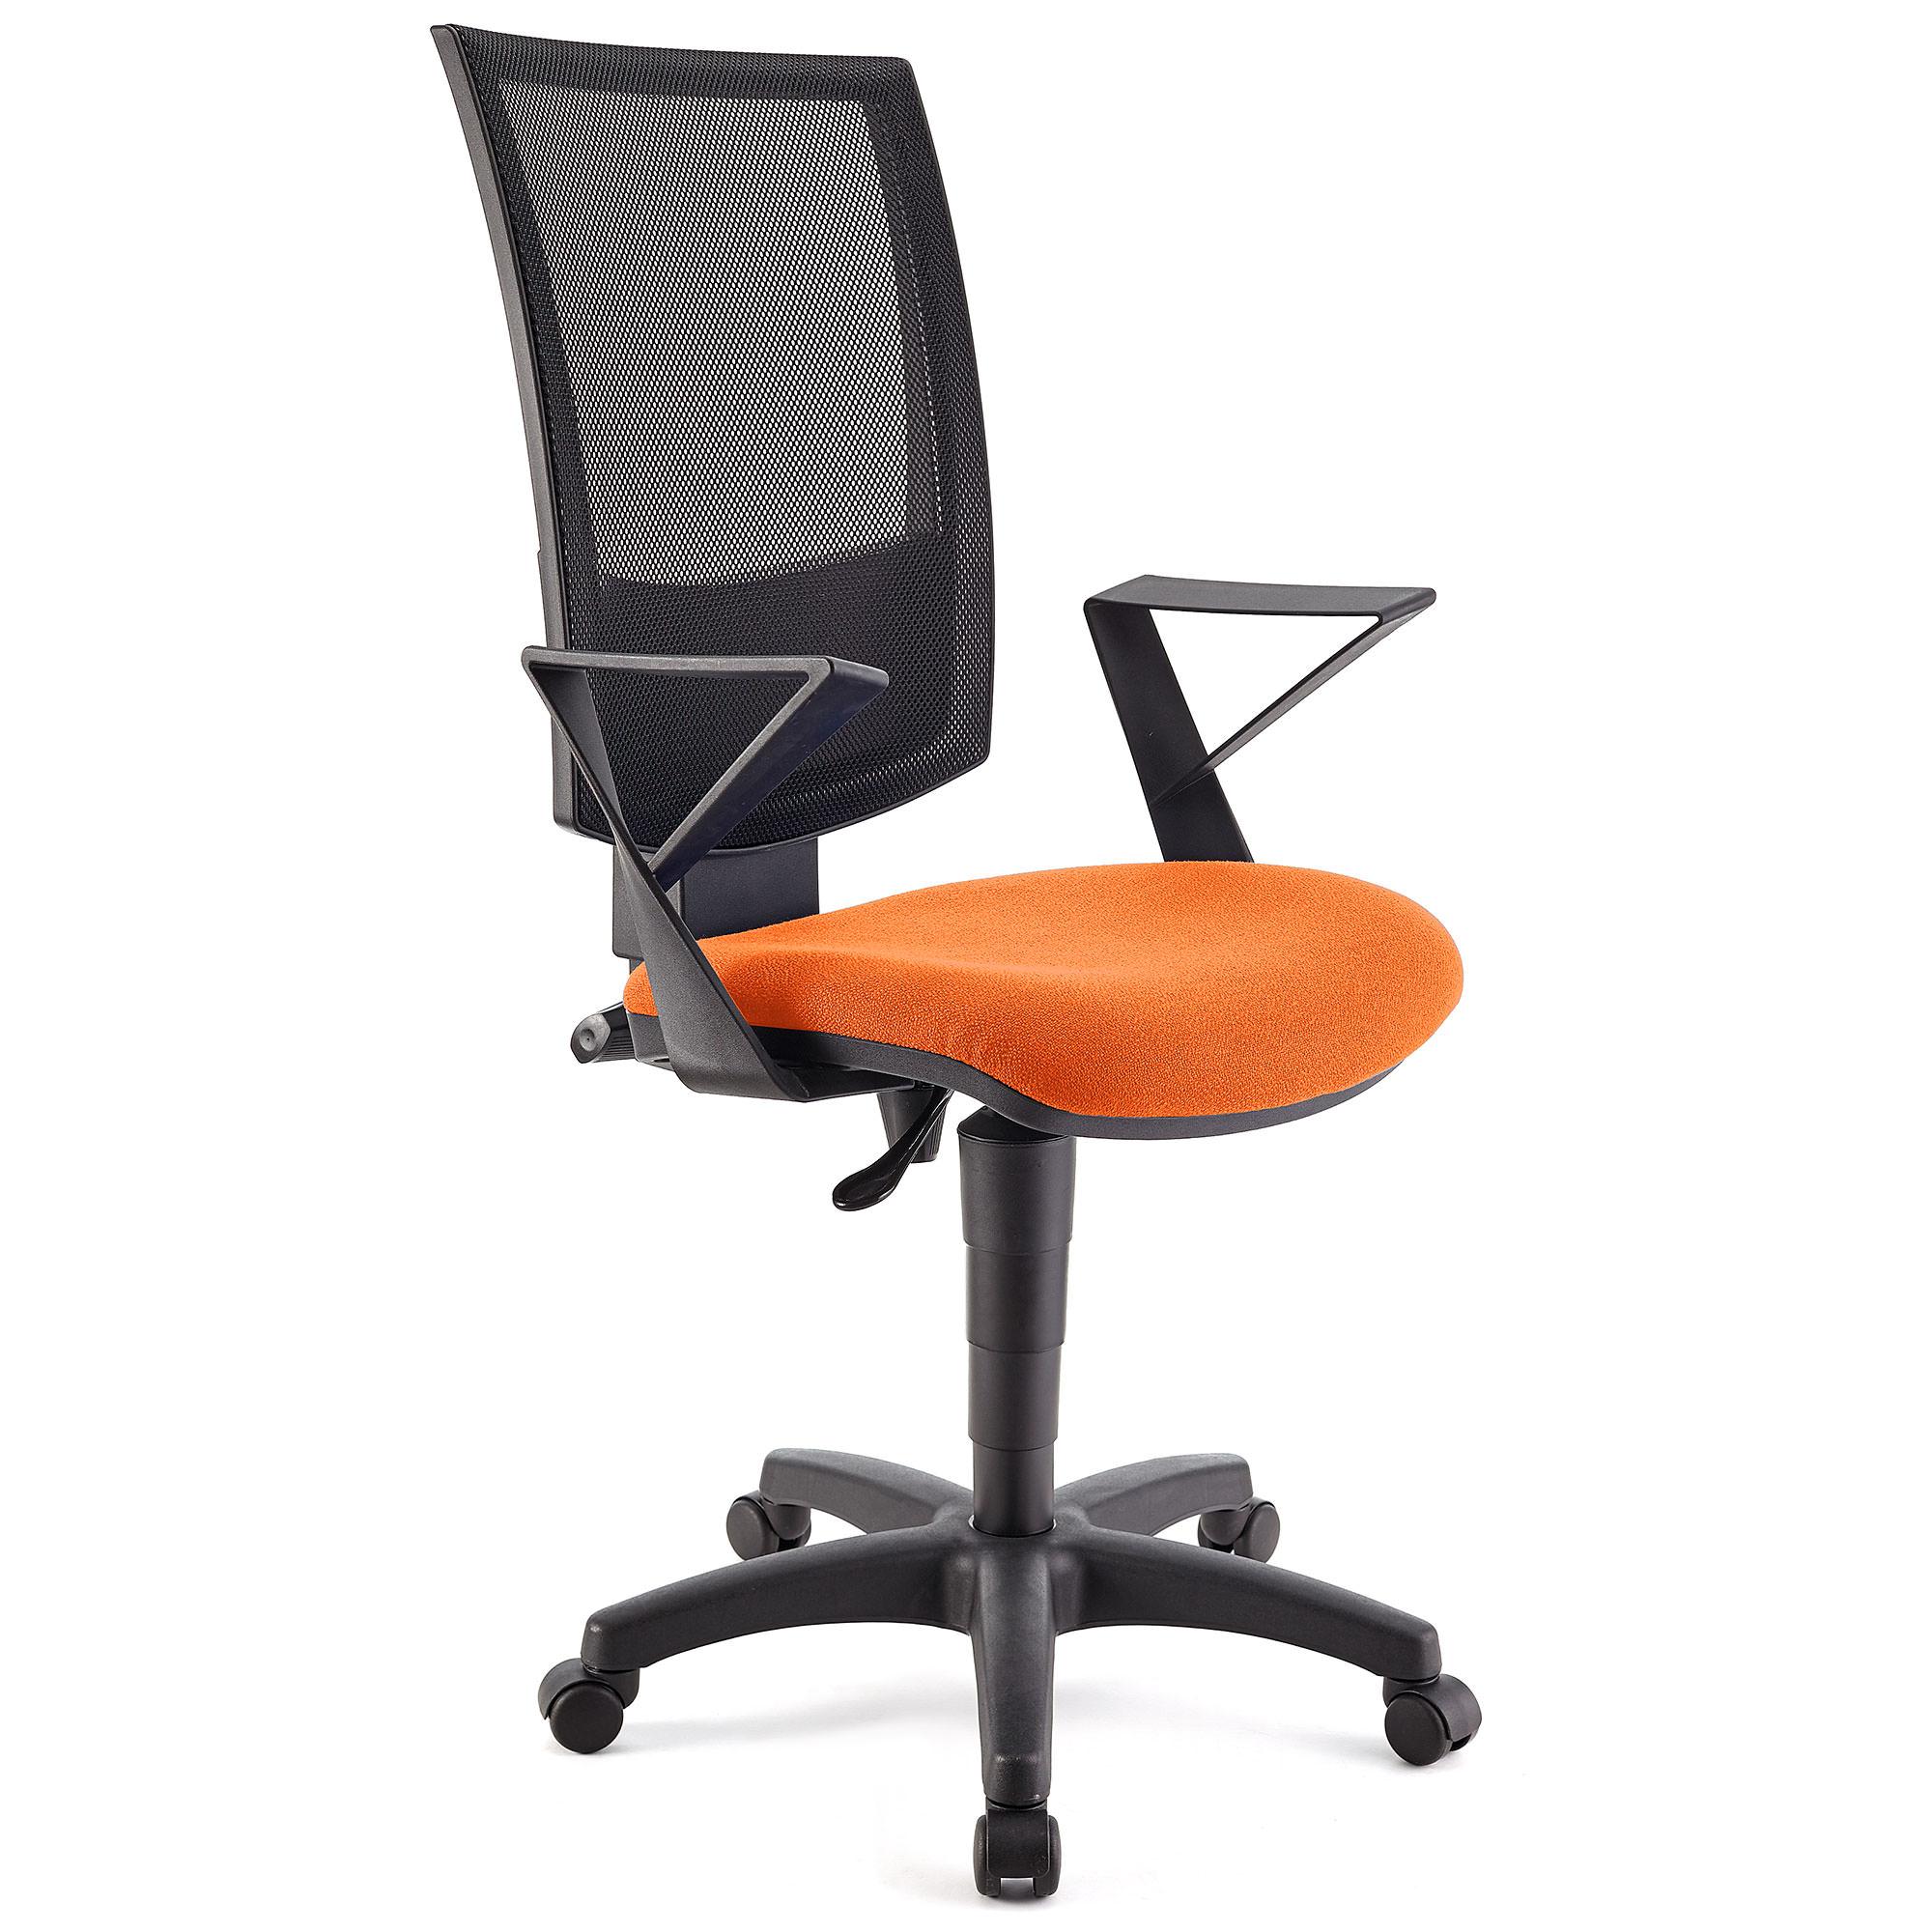 Bürostuhl PANDORA mit Armlehnen, Rückenlehne mit Netzbezug, dicke Polsterung, Farbe Orange